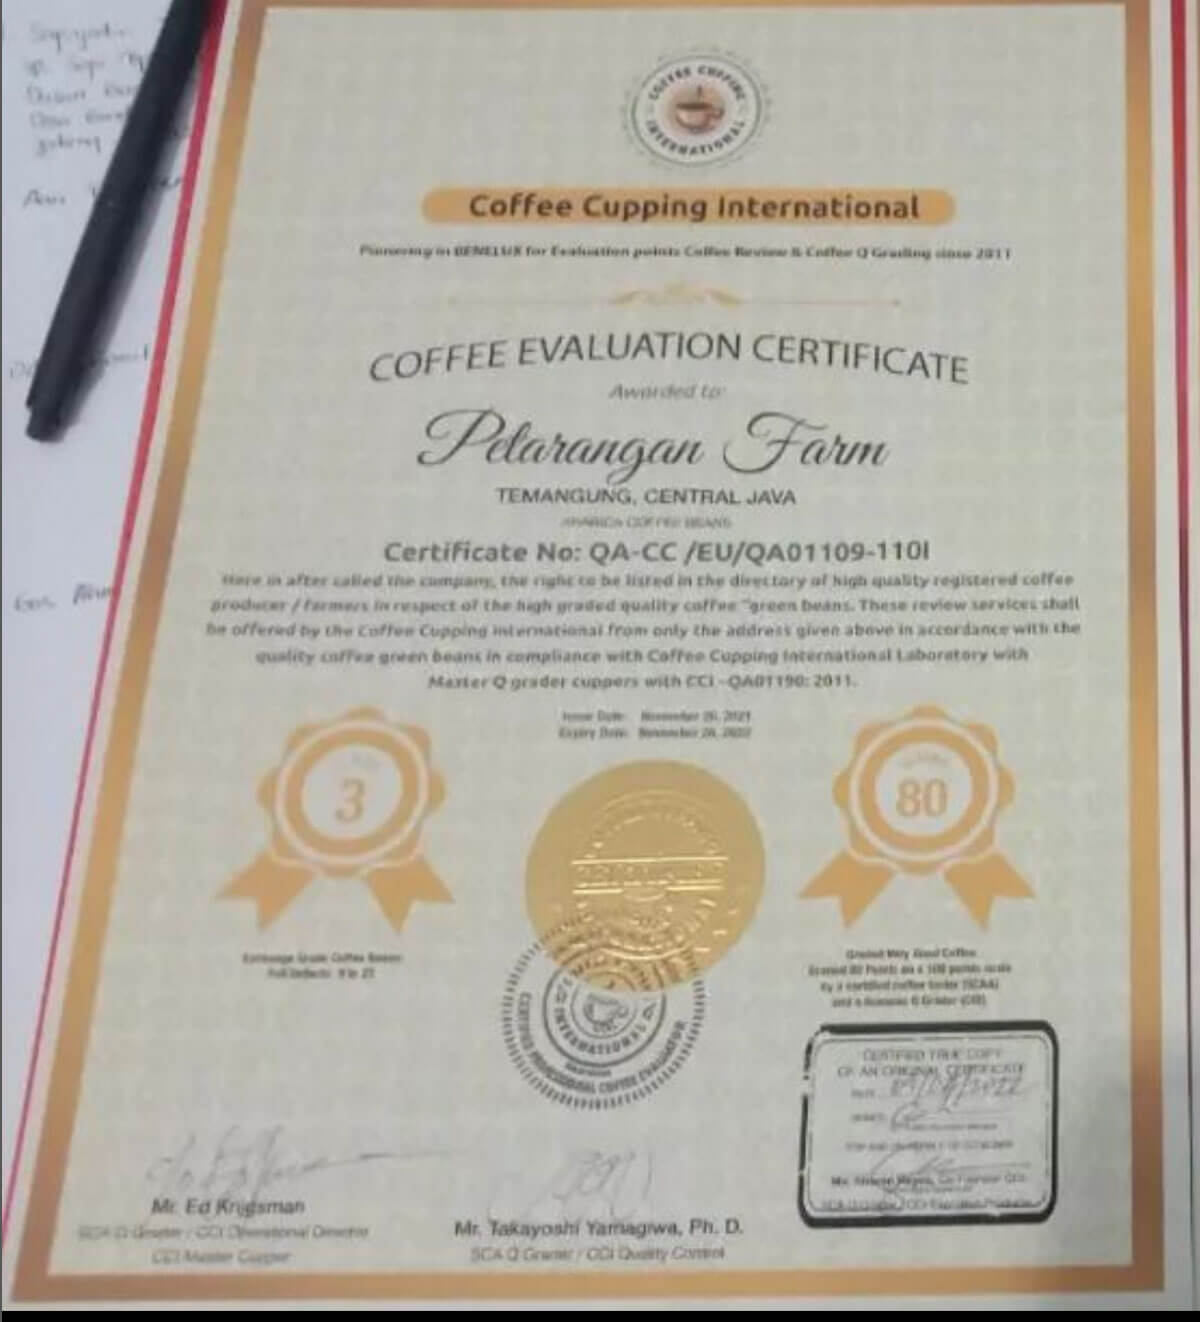 sertifikat petarangan farm temanggung